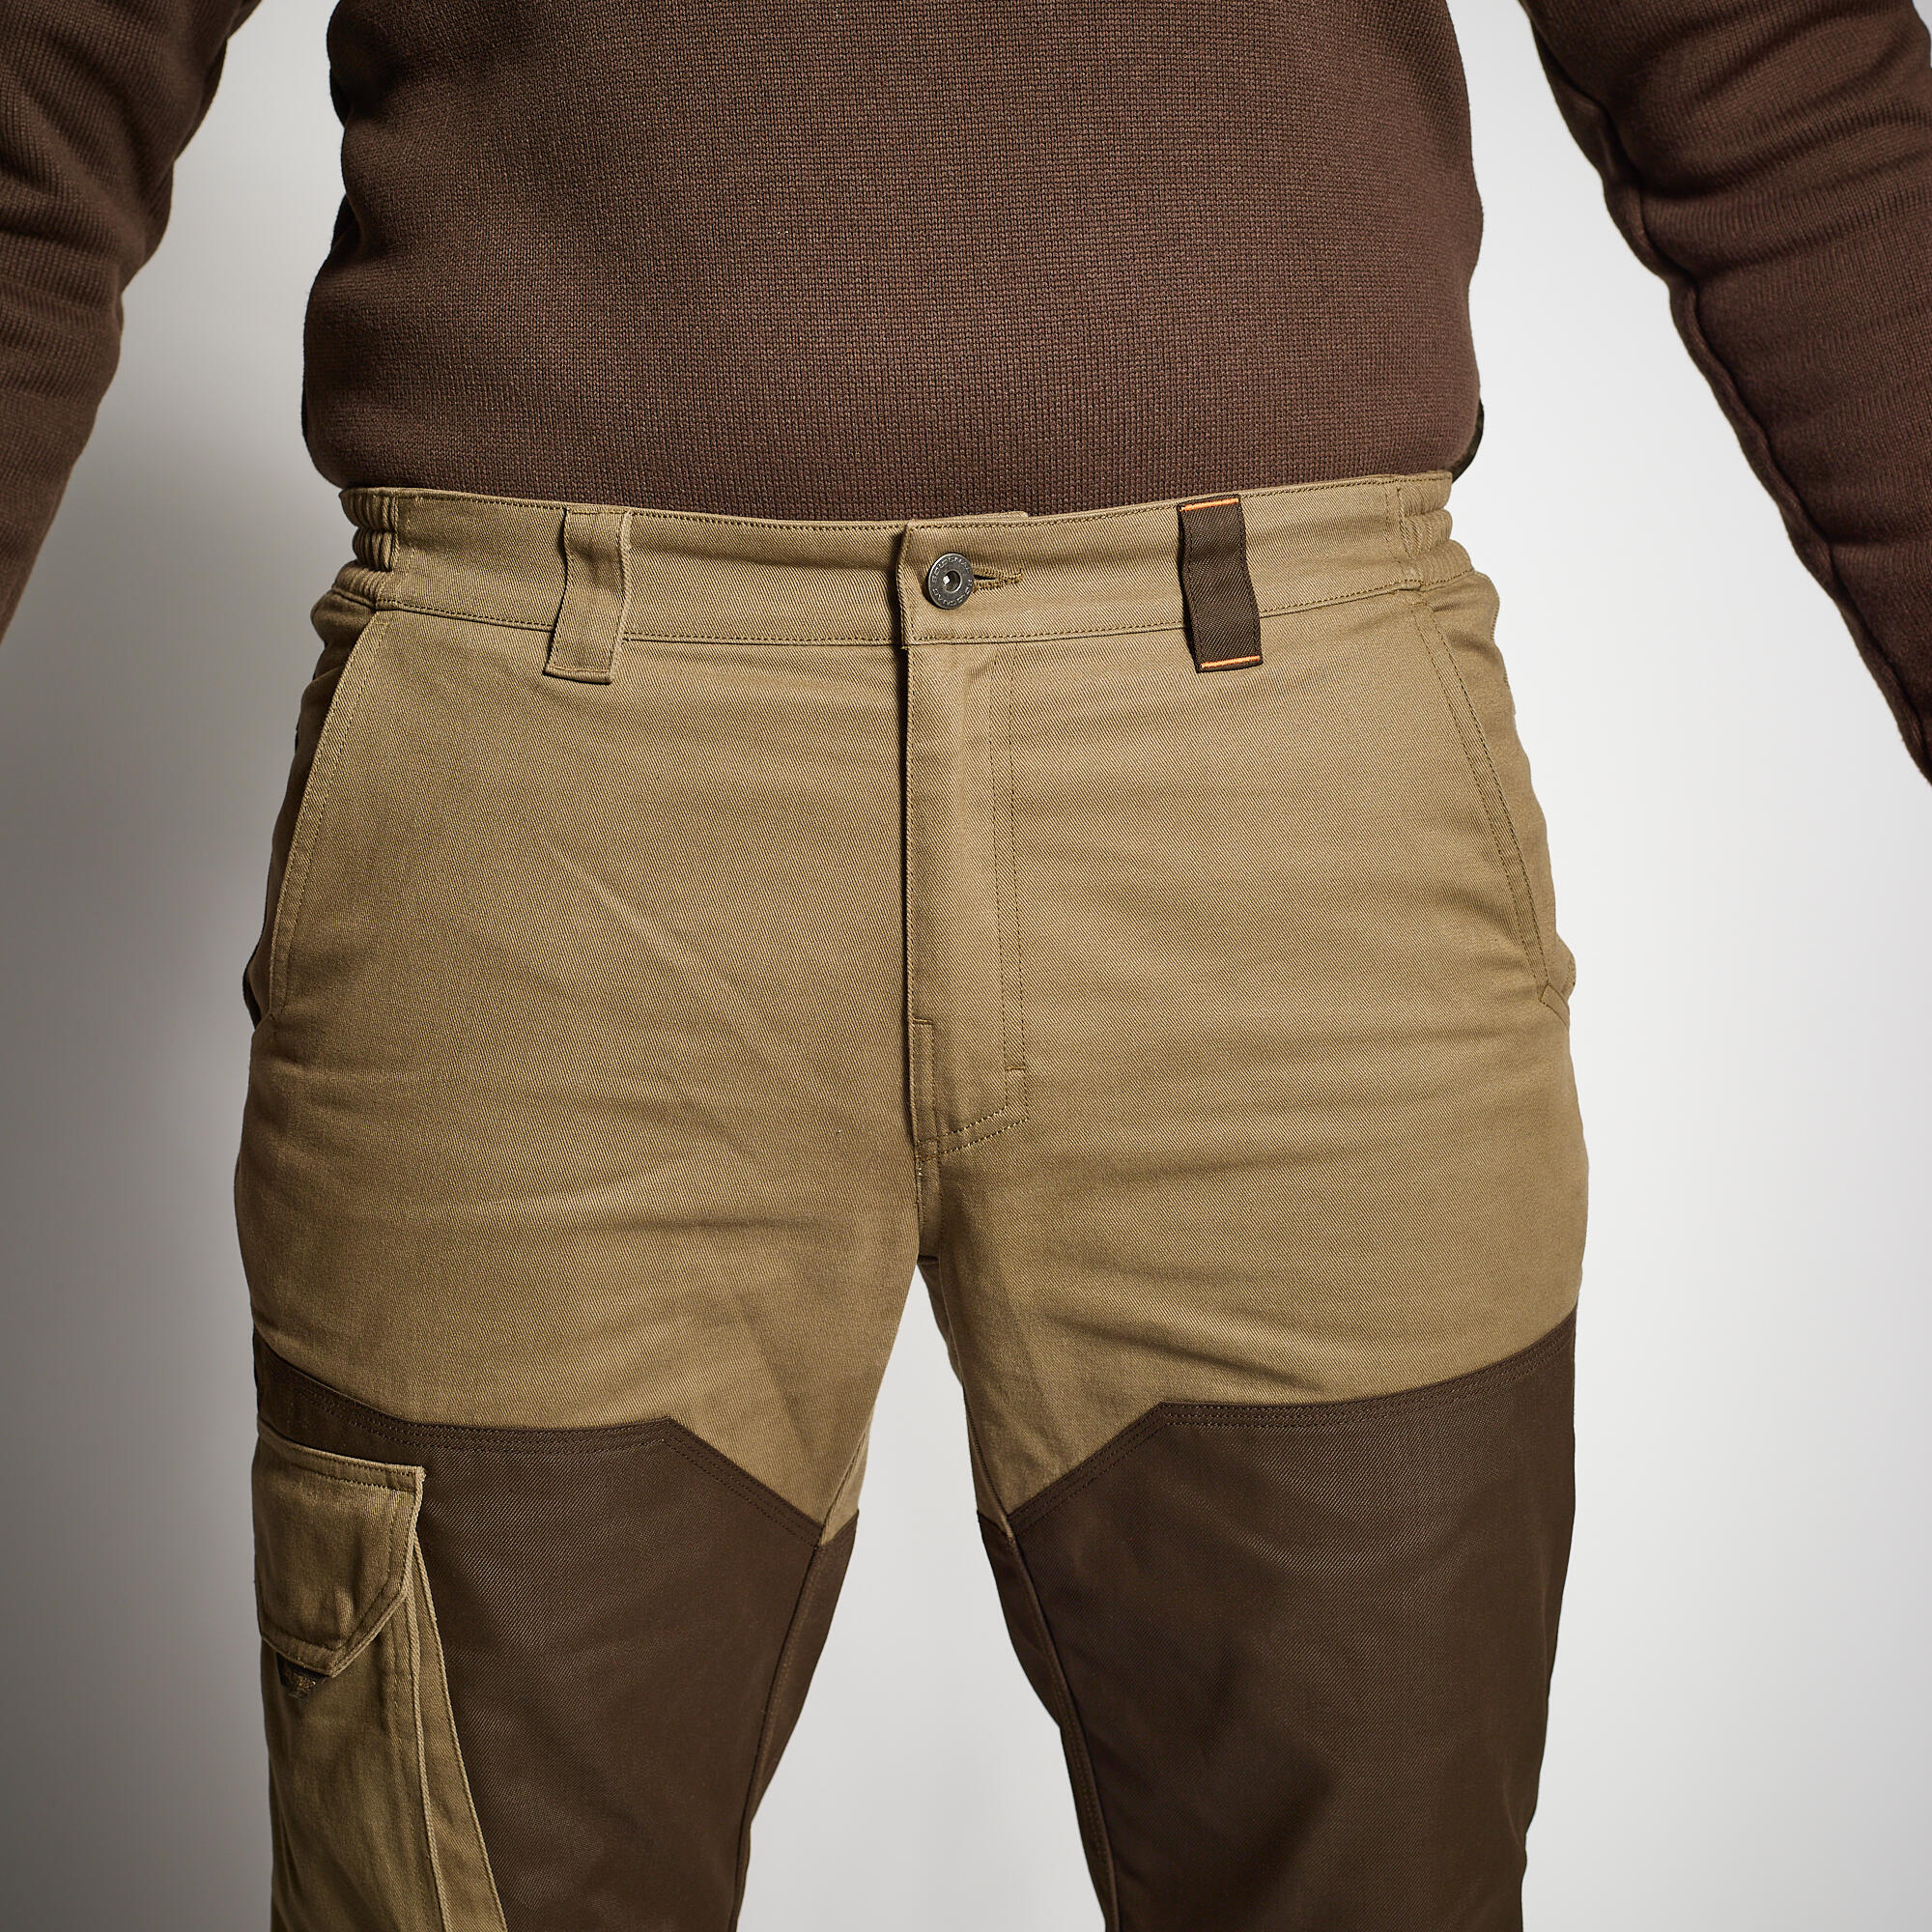 Pantalon de chasse renfort - 520 marron - SOLOGNAC